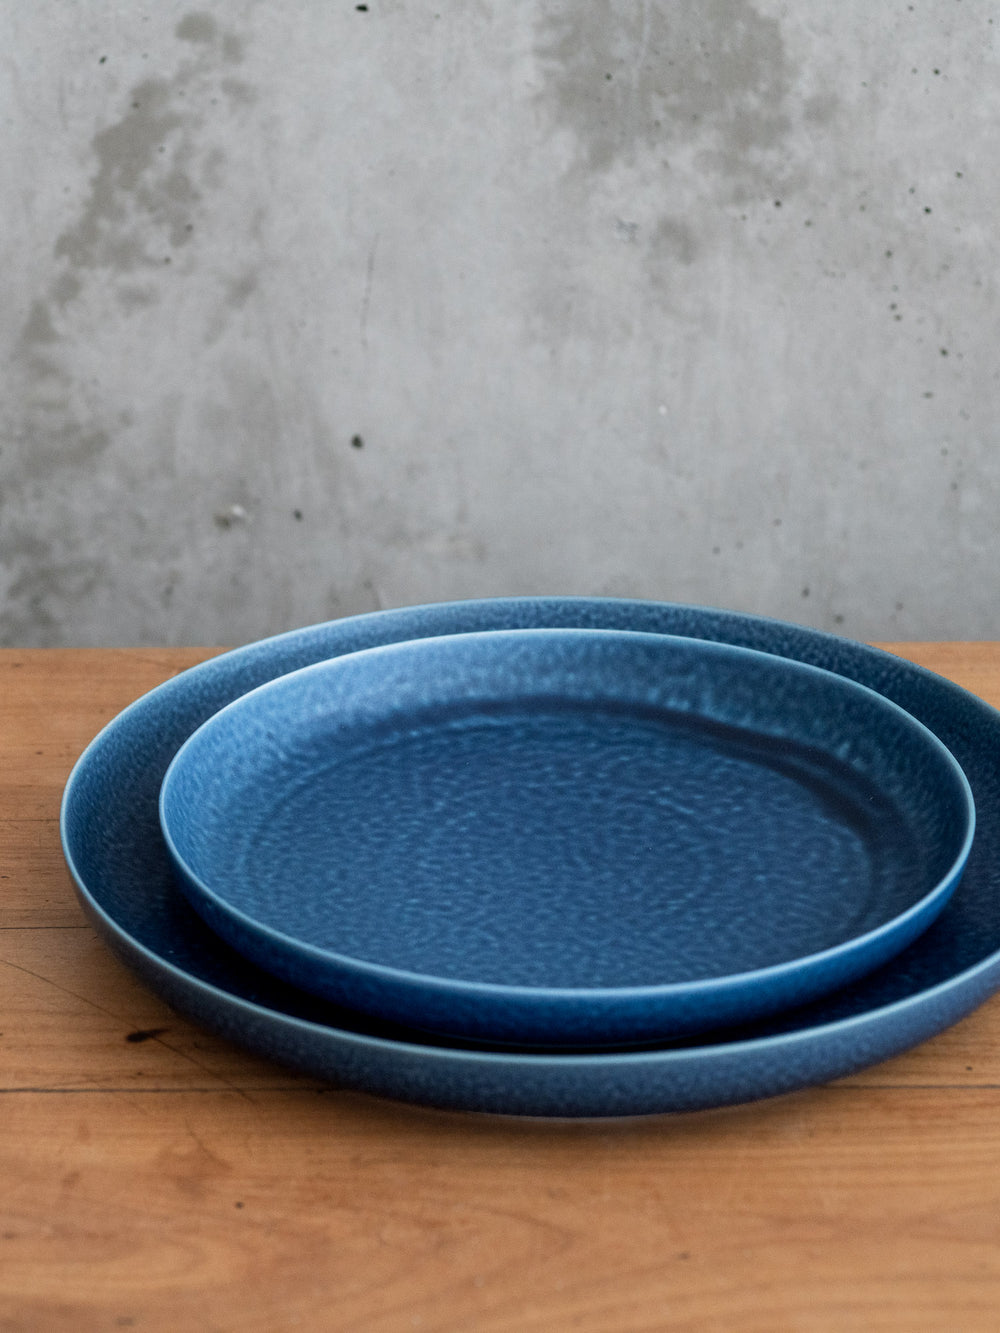 ReIRABO Dinner Plate – Offshore Blue